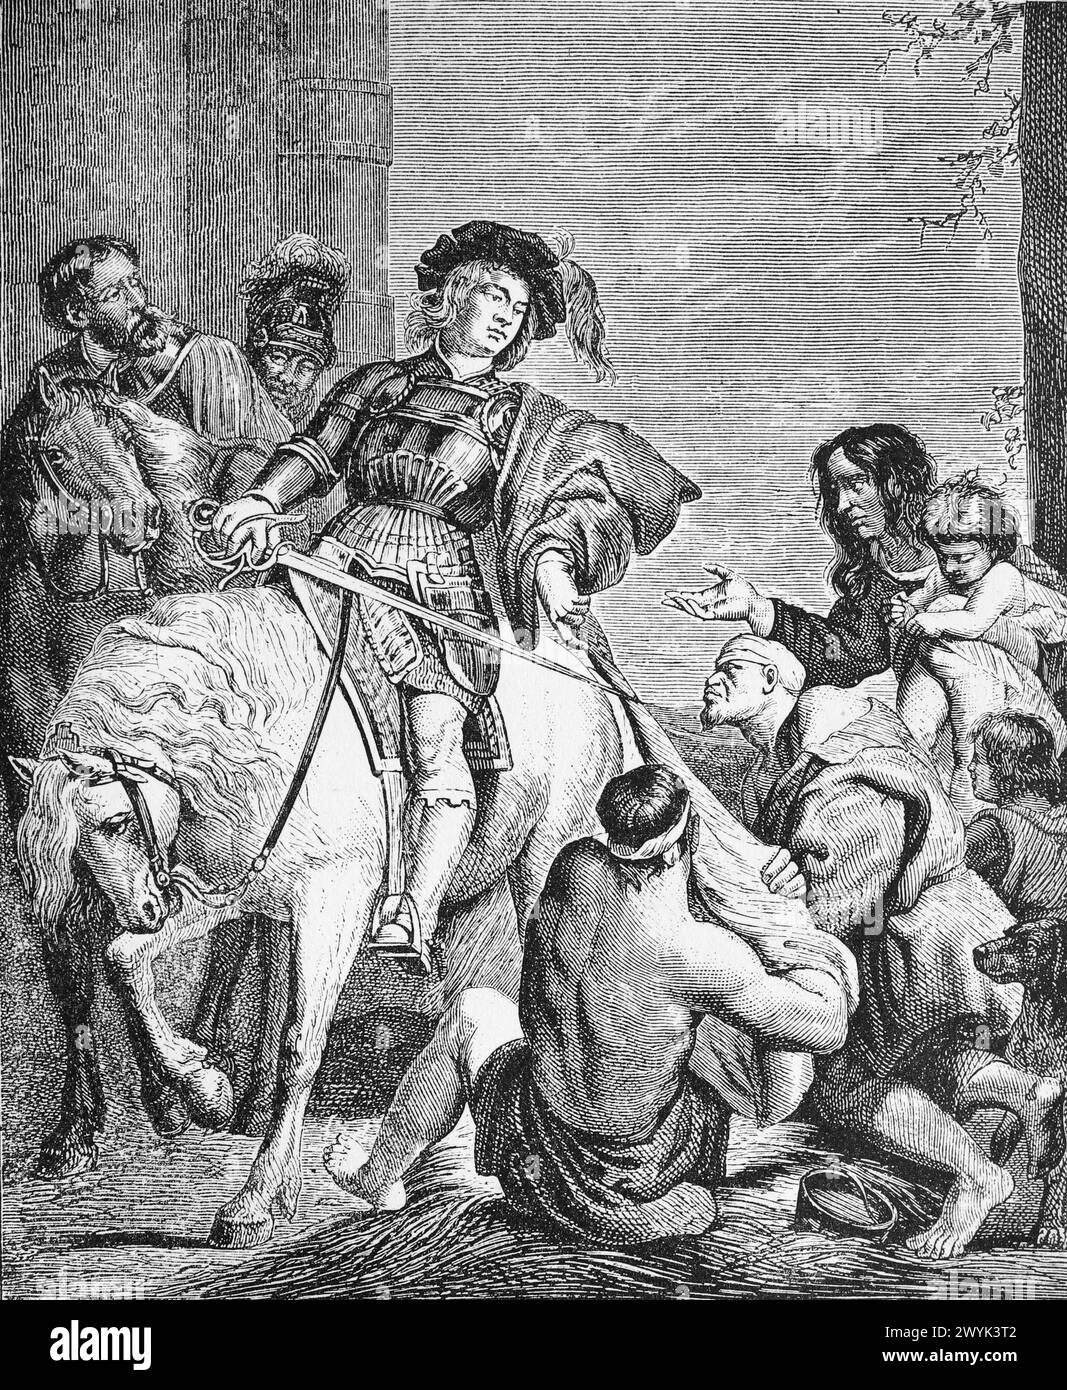 San Martino che divide il suo mantello per vestire il mendicante, dopo un'immagine di Rubens: Engraving from Lives of the Saints (novembre parte 1) del reverendo Sabin Baring-Gould, pubblicato nel 1898 Foto Stock